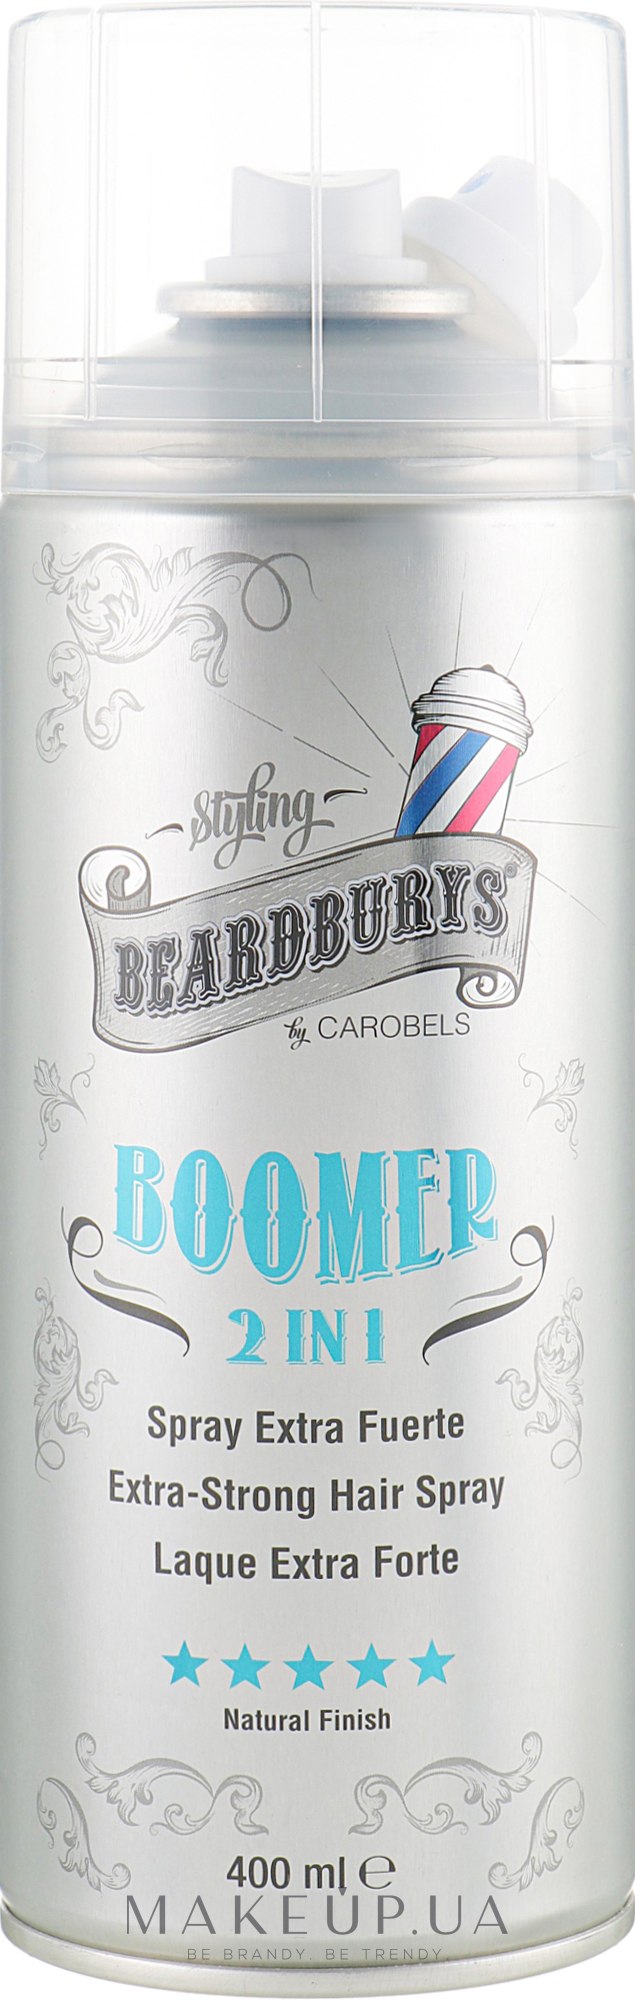 Лак для волос с двумя распылителями - Beardburys Boomer 2 in 1 Super Strong Hair Spray — фото 400ml